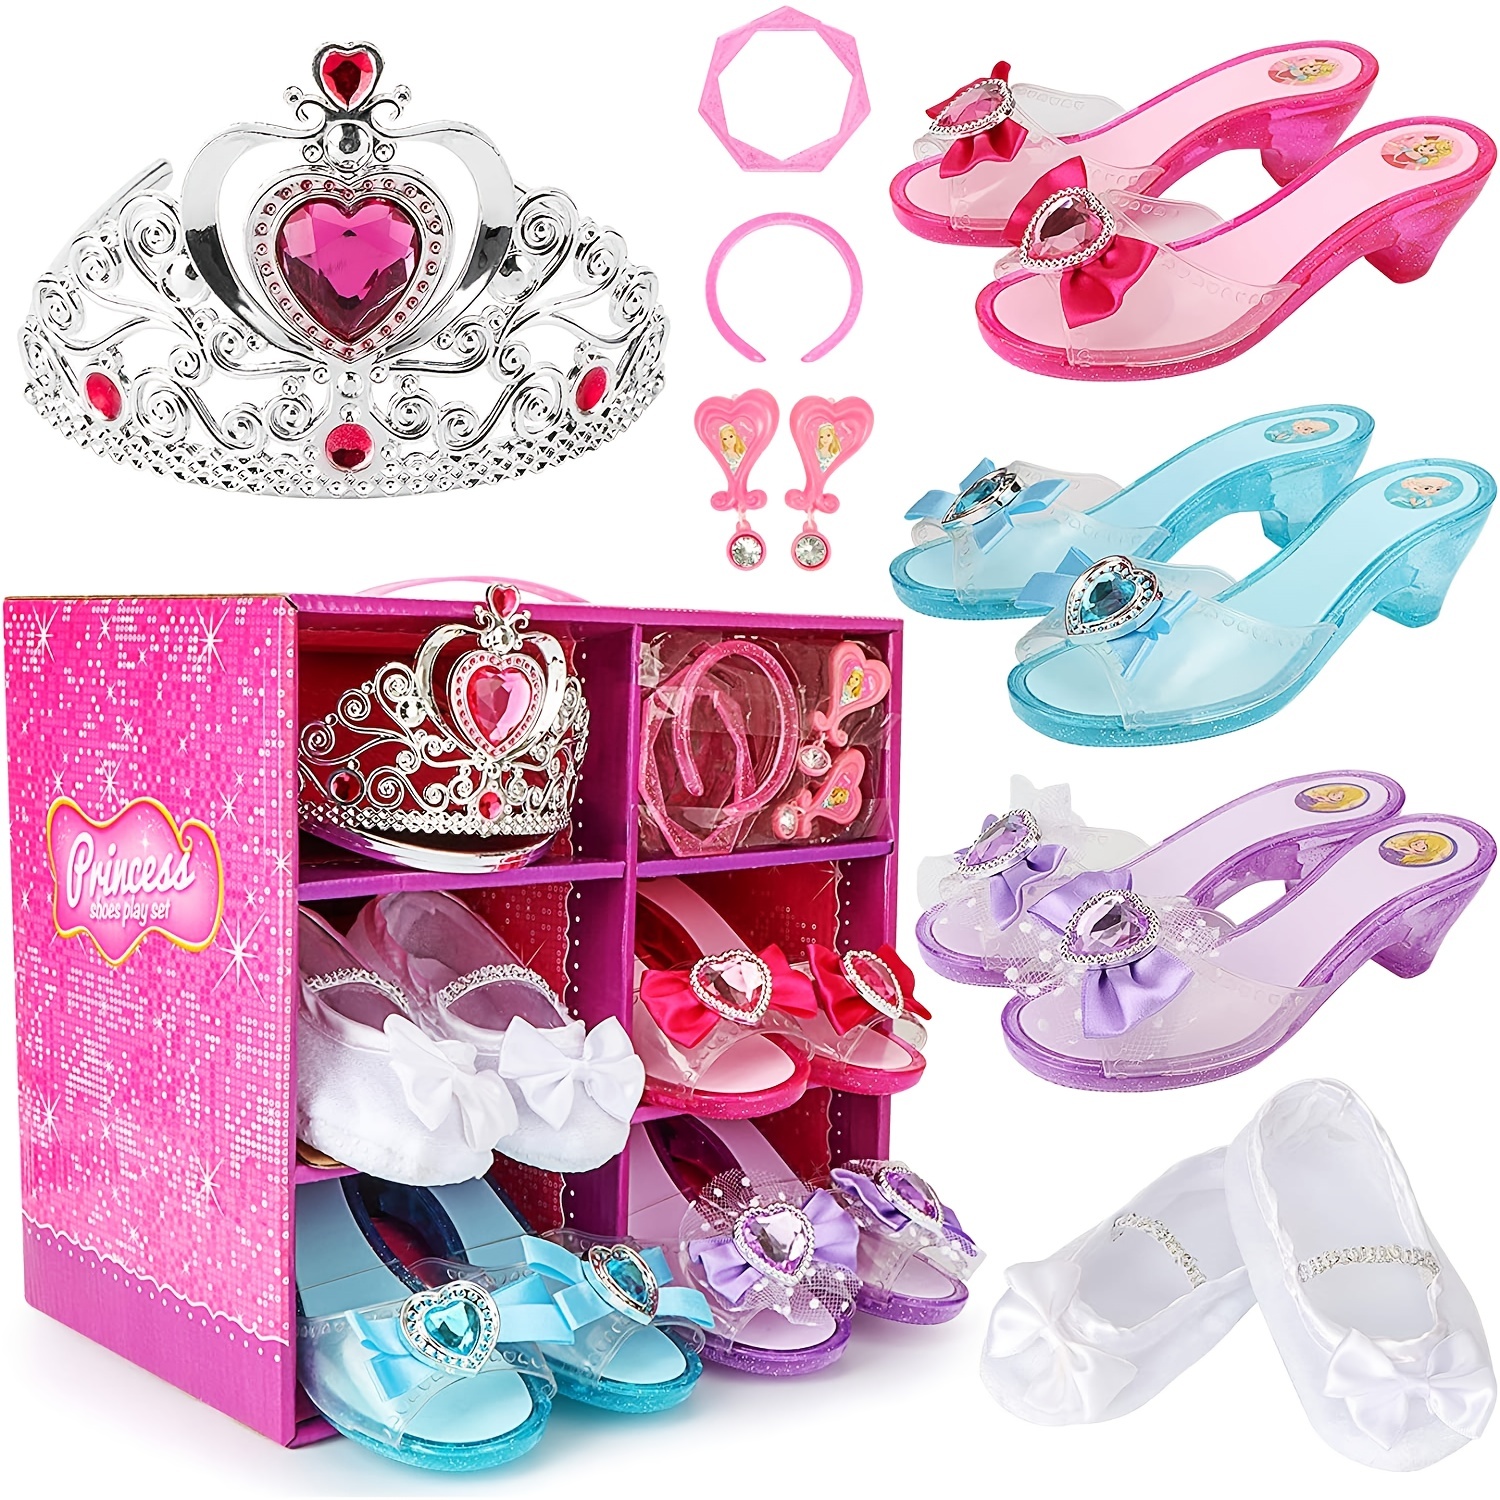 Zapatos de Princesa Rosas para niñas de 4 a 6 años